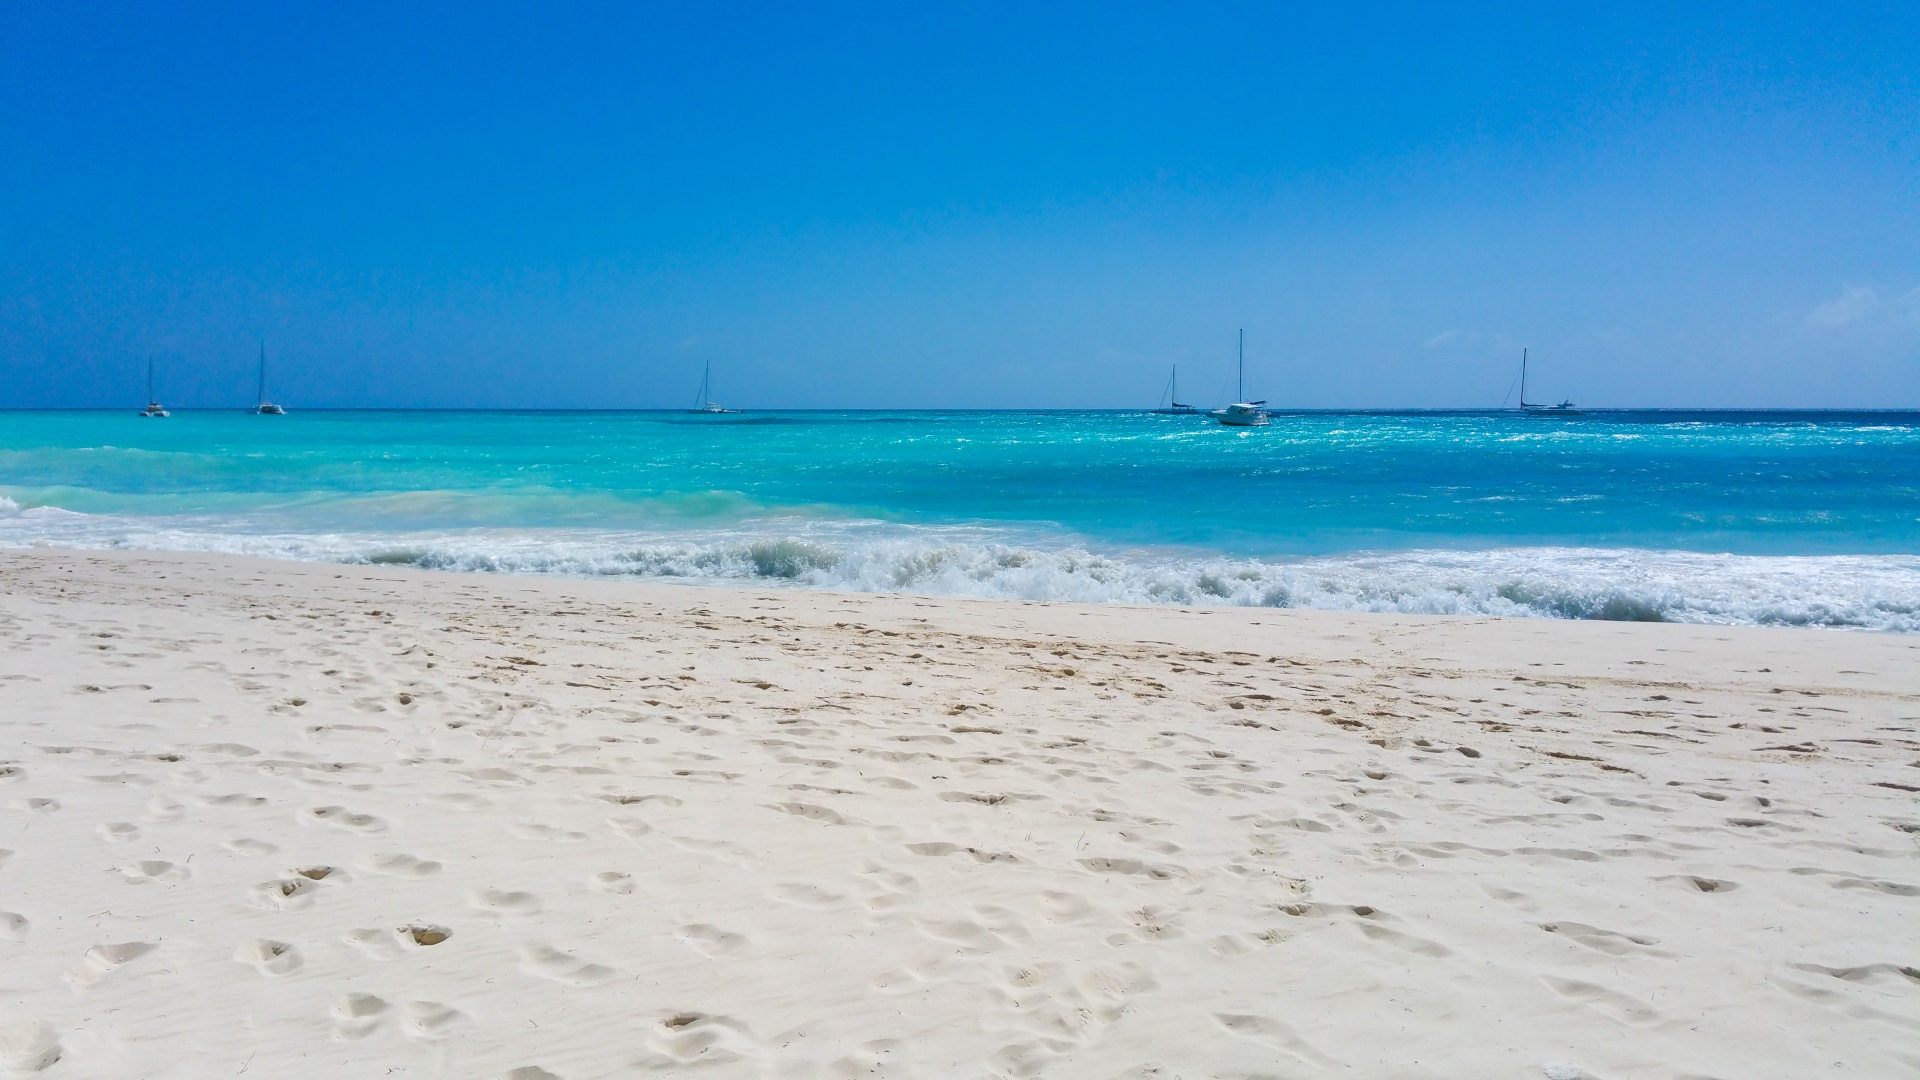 Live near the sea. Карибское море пляж. Кипр пляжи с белым песком. Пляж со стороны моря. Вид на пляж со стороны моря.